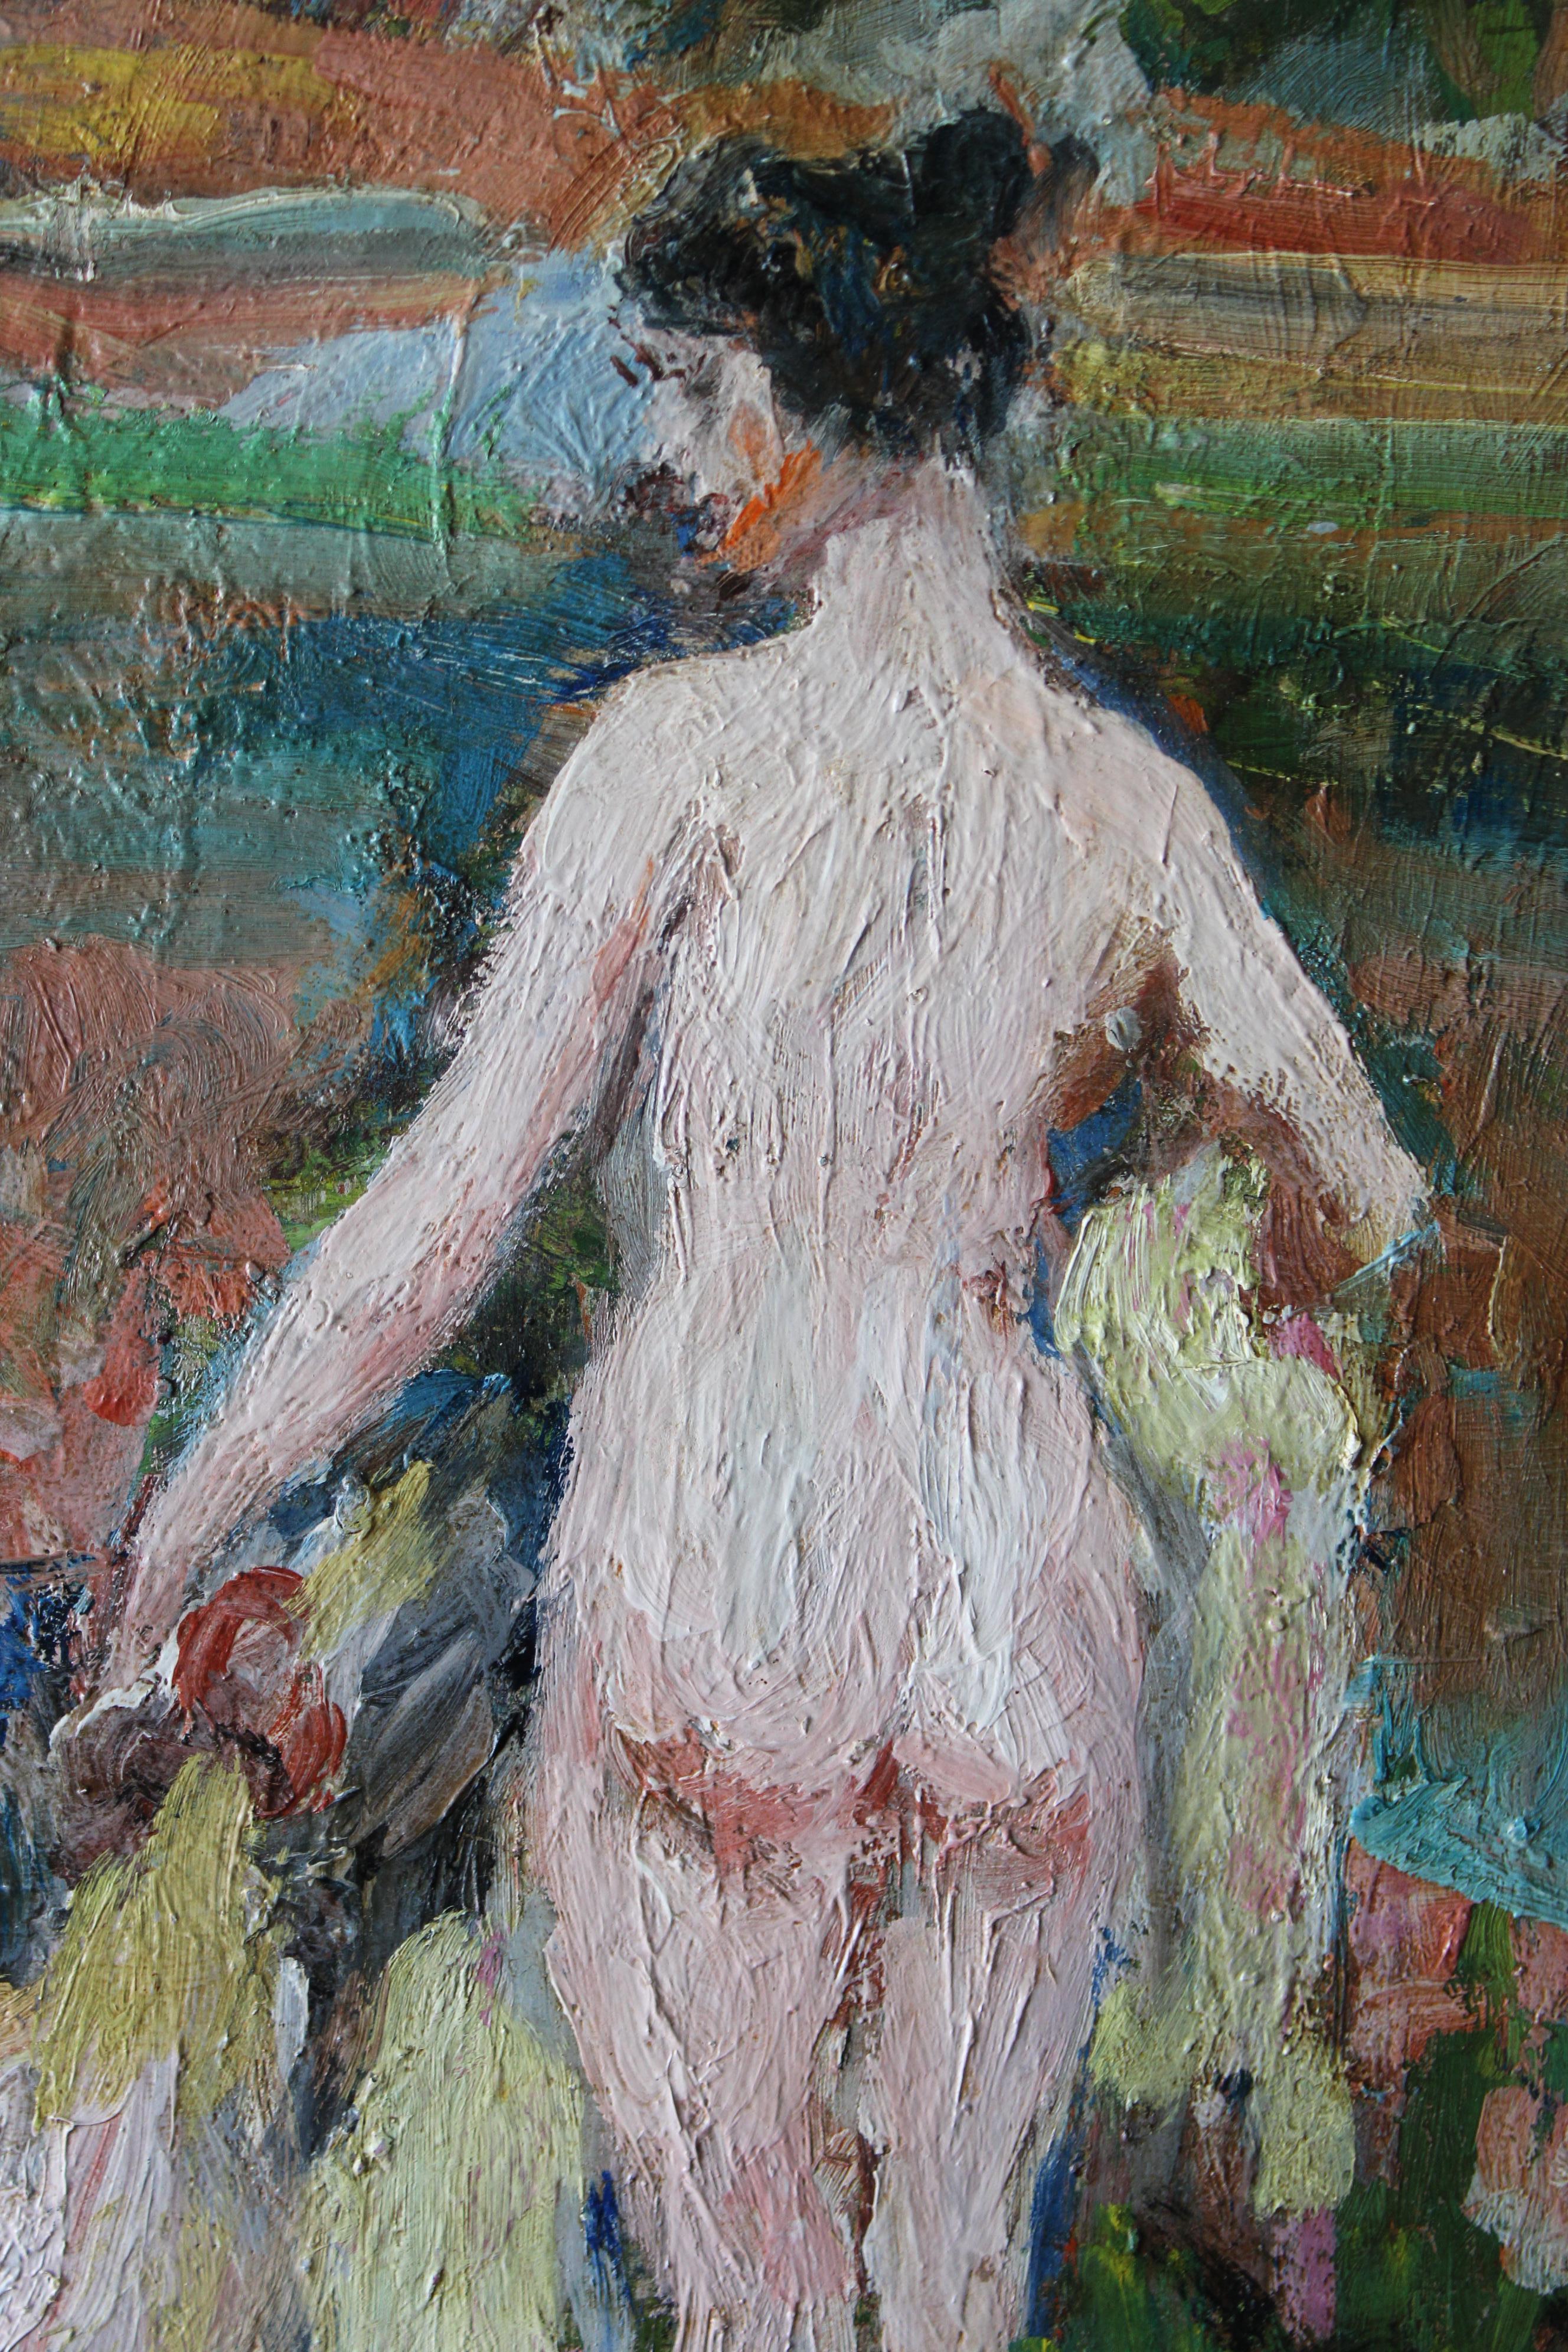 Akt & Hund figurative post-impressionistischen Ölgemälde, Frau & Hund Porträt – Painting von Paul Jean Gervais